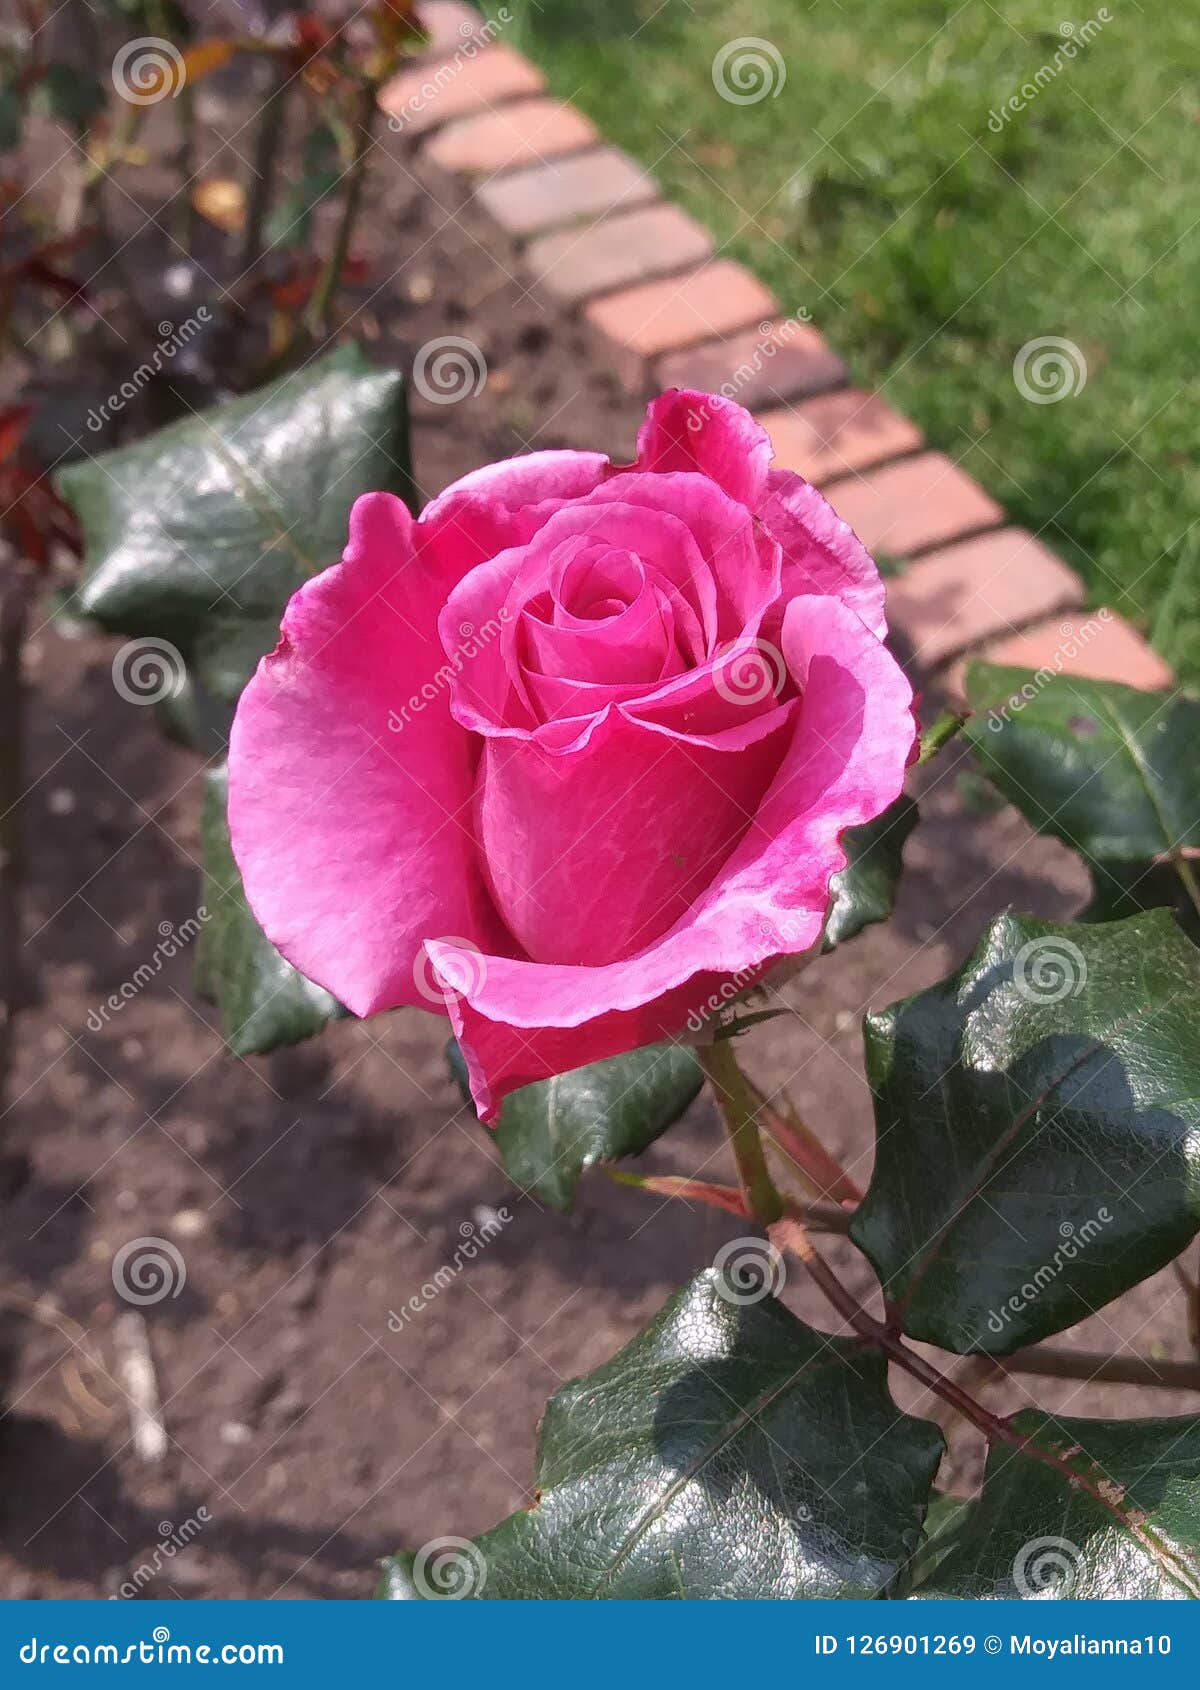 botÃÂ³n de rosa colombiana